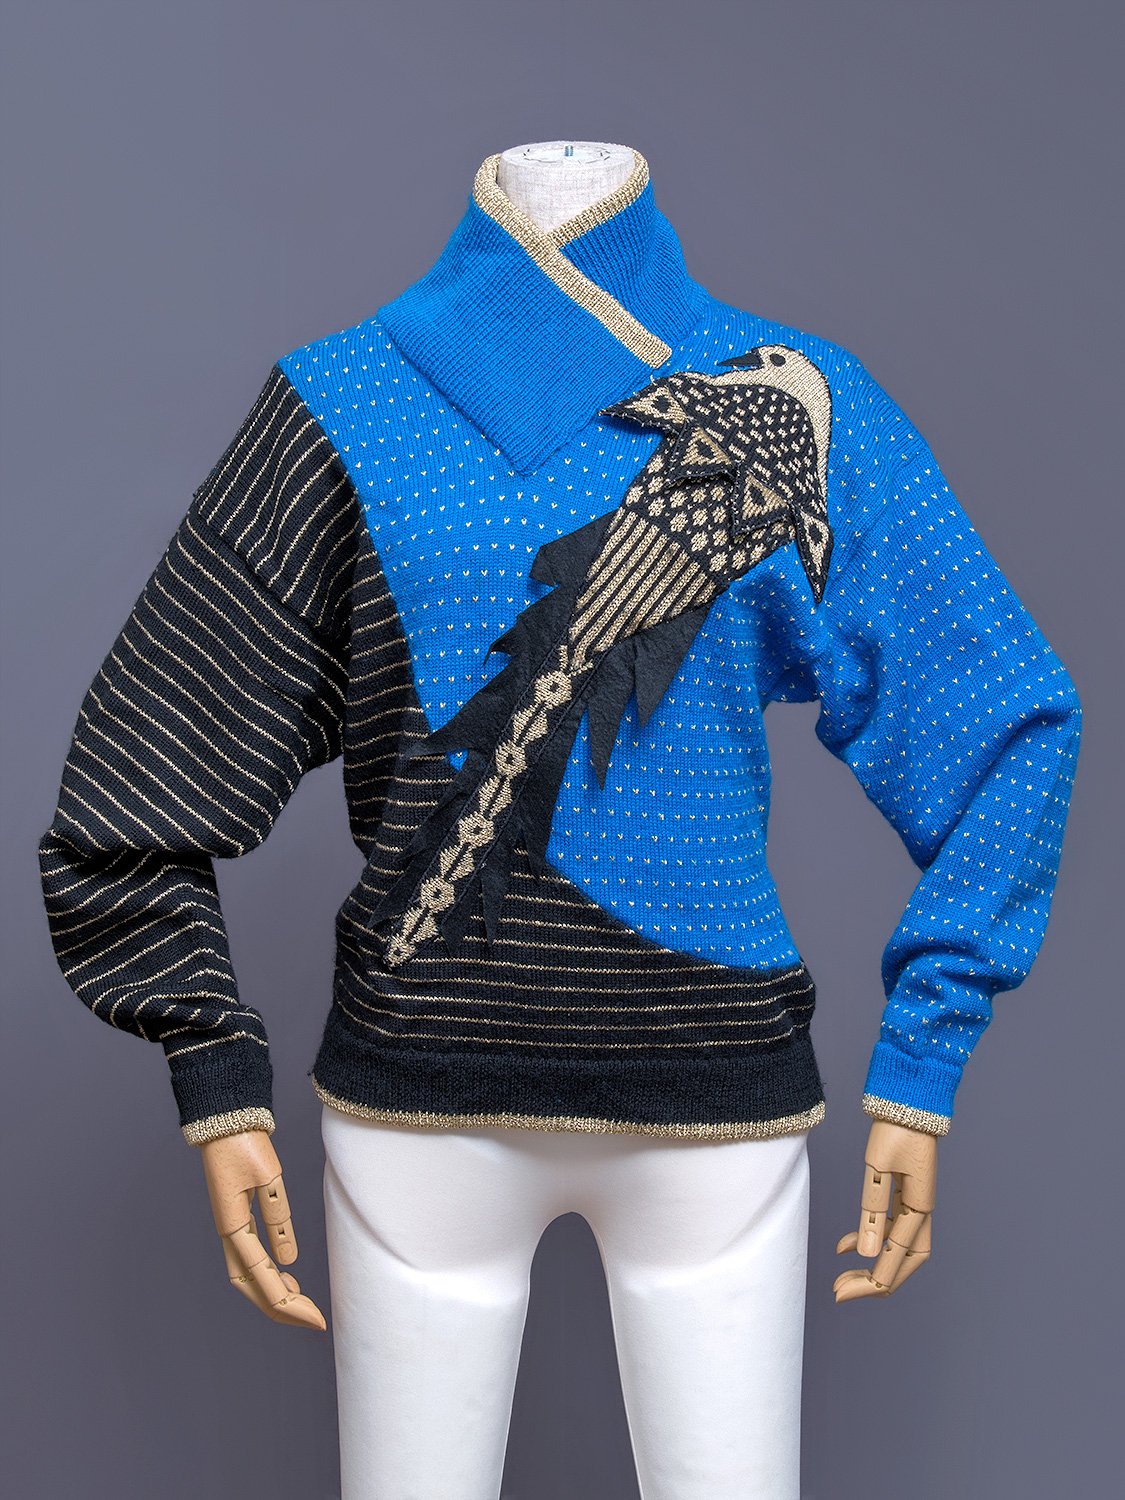 1977 KANSAI YAMAMOTO sweater with large hood